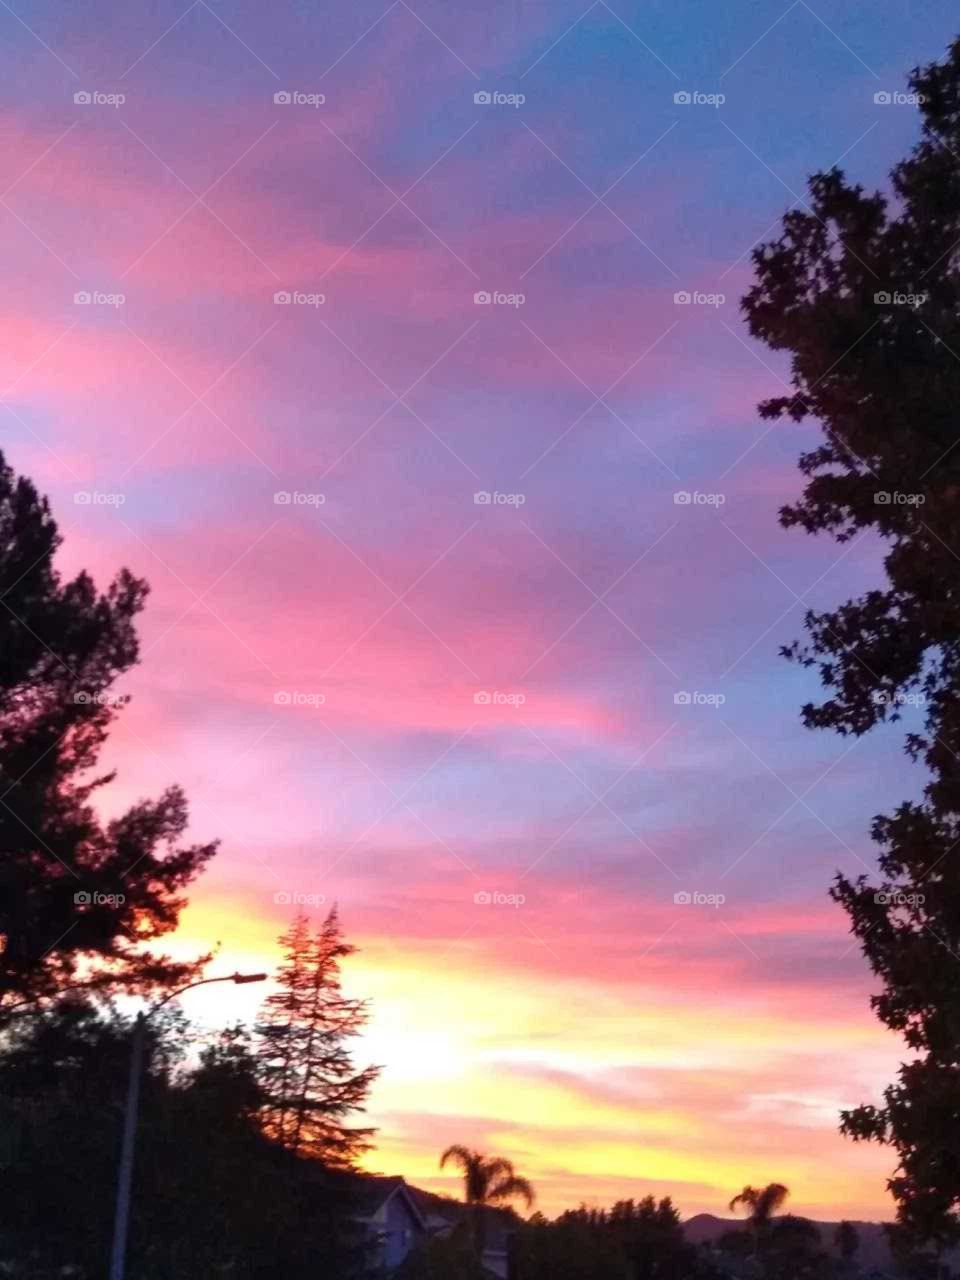 Temecula California evening sunset